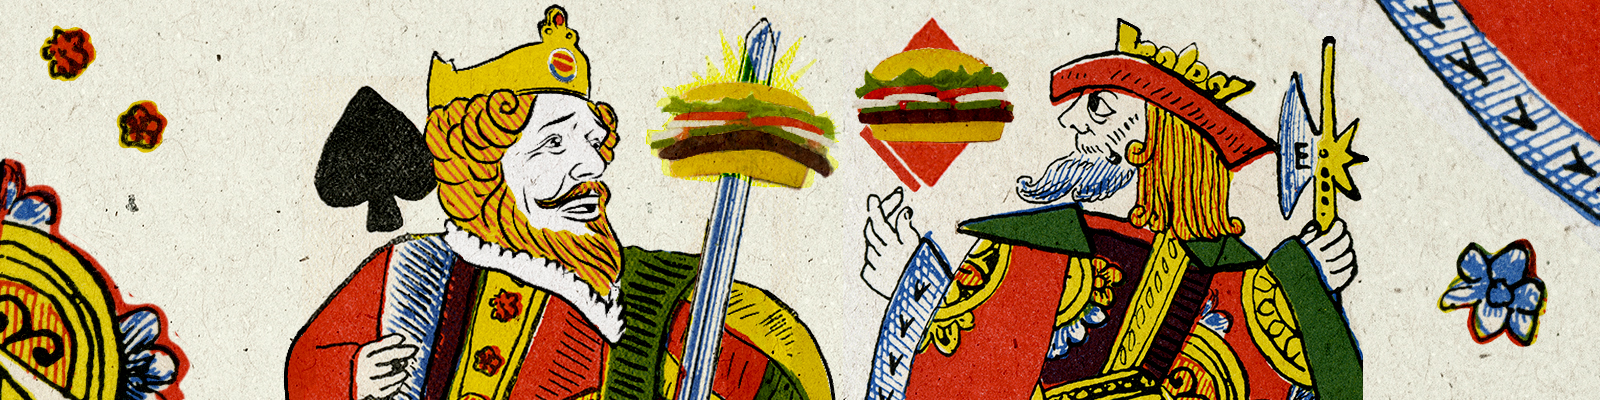 TOP-FEATURE-BurgerKing.jpg